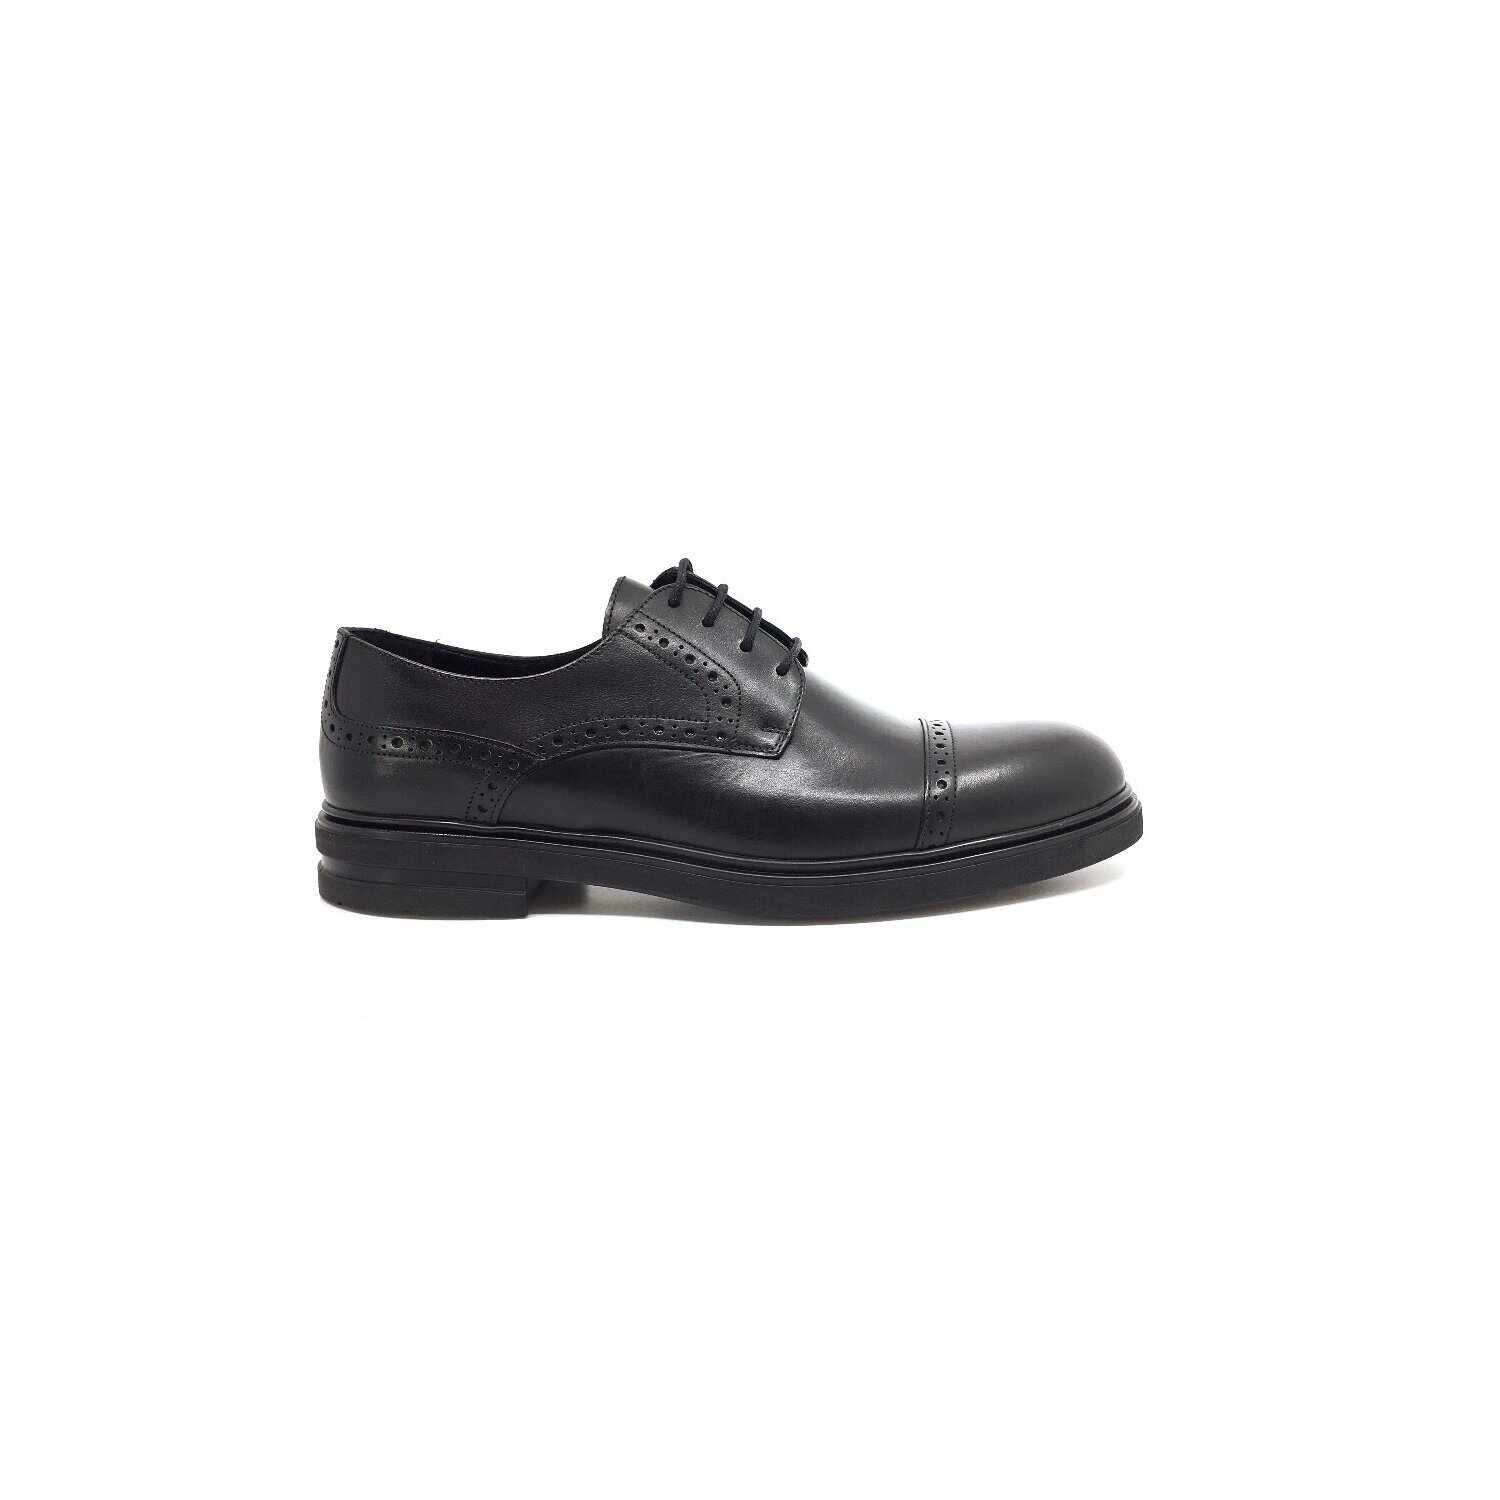 Pantofi casual barbati din piele naturala, Leofex - Mostra Filip negru box